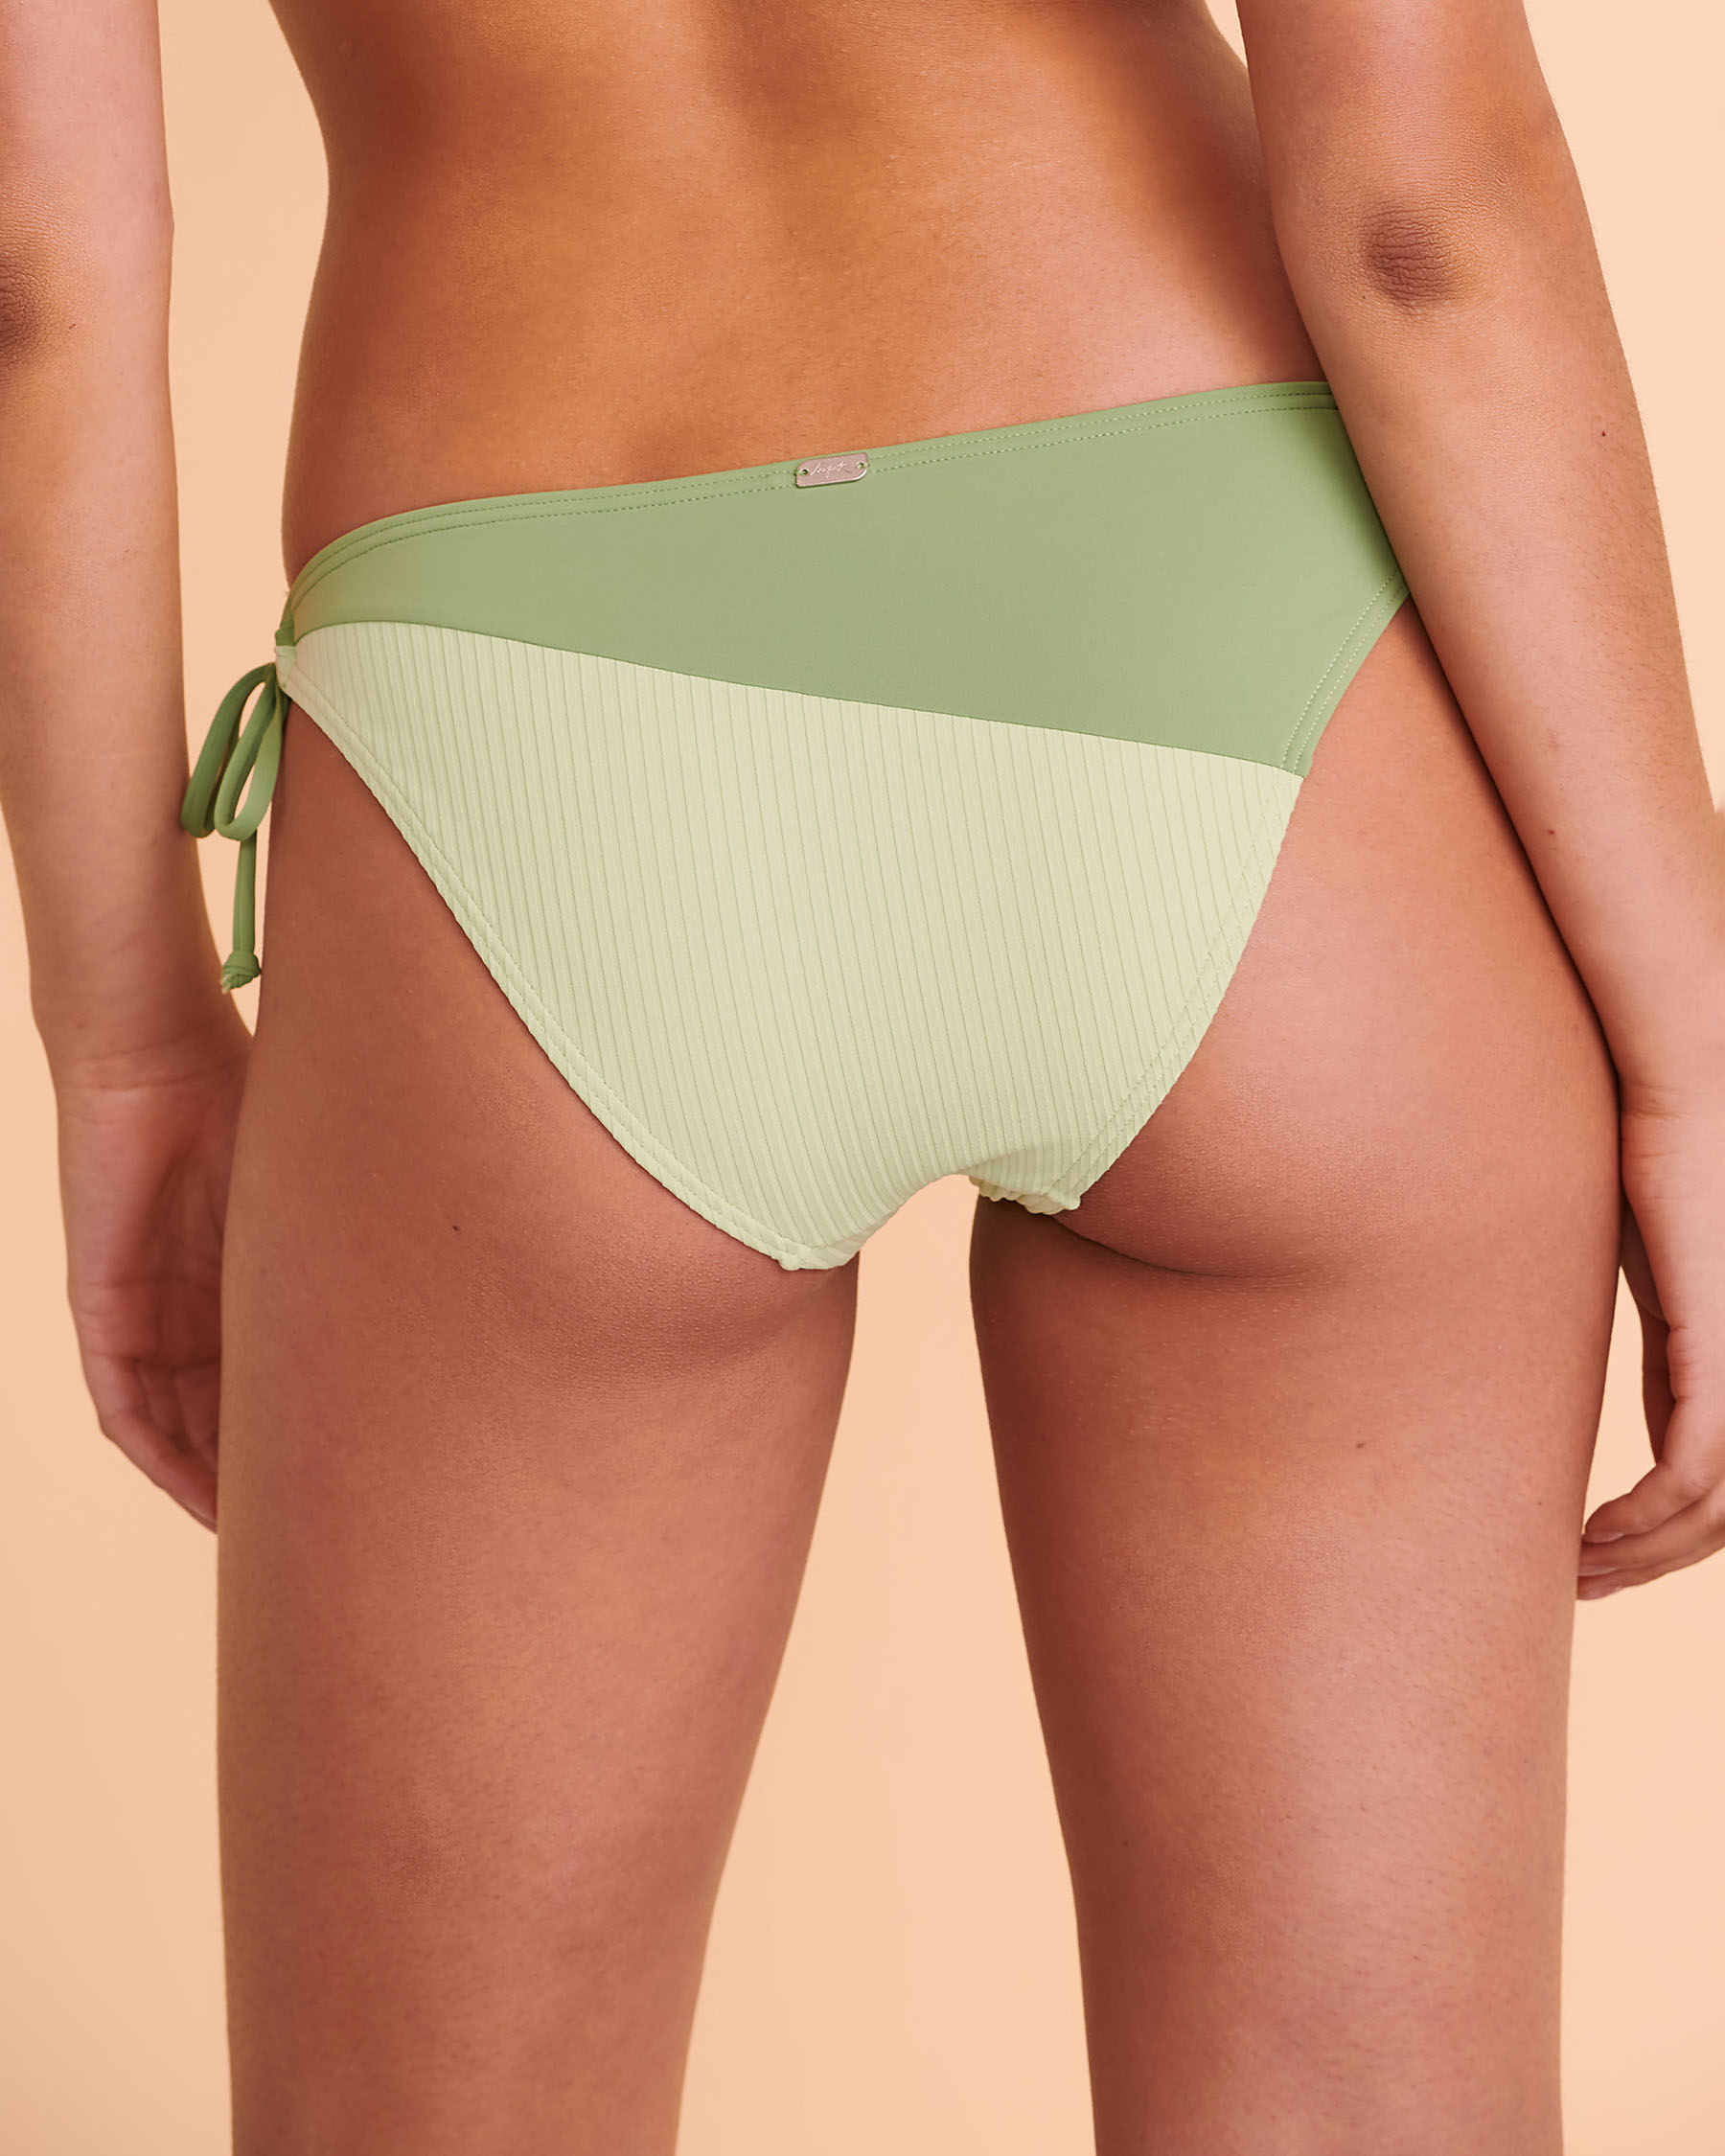 TROPIK GIADA Brazilian Bikini Bottom Green 01300166 - View3